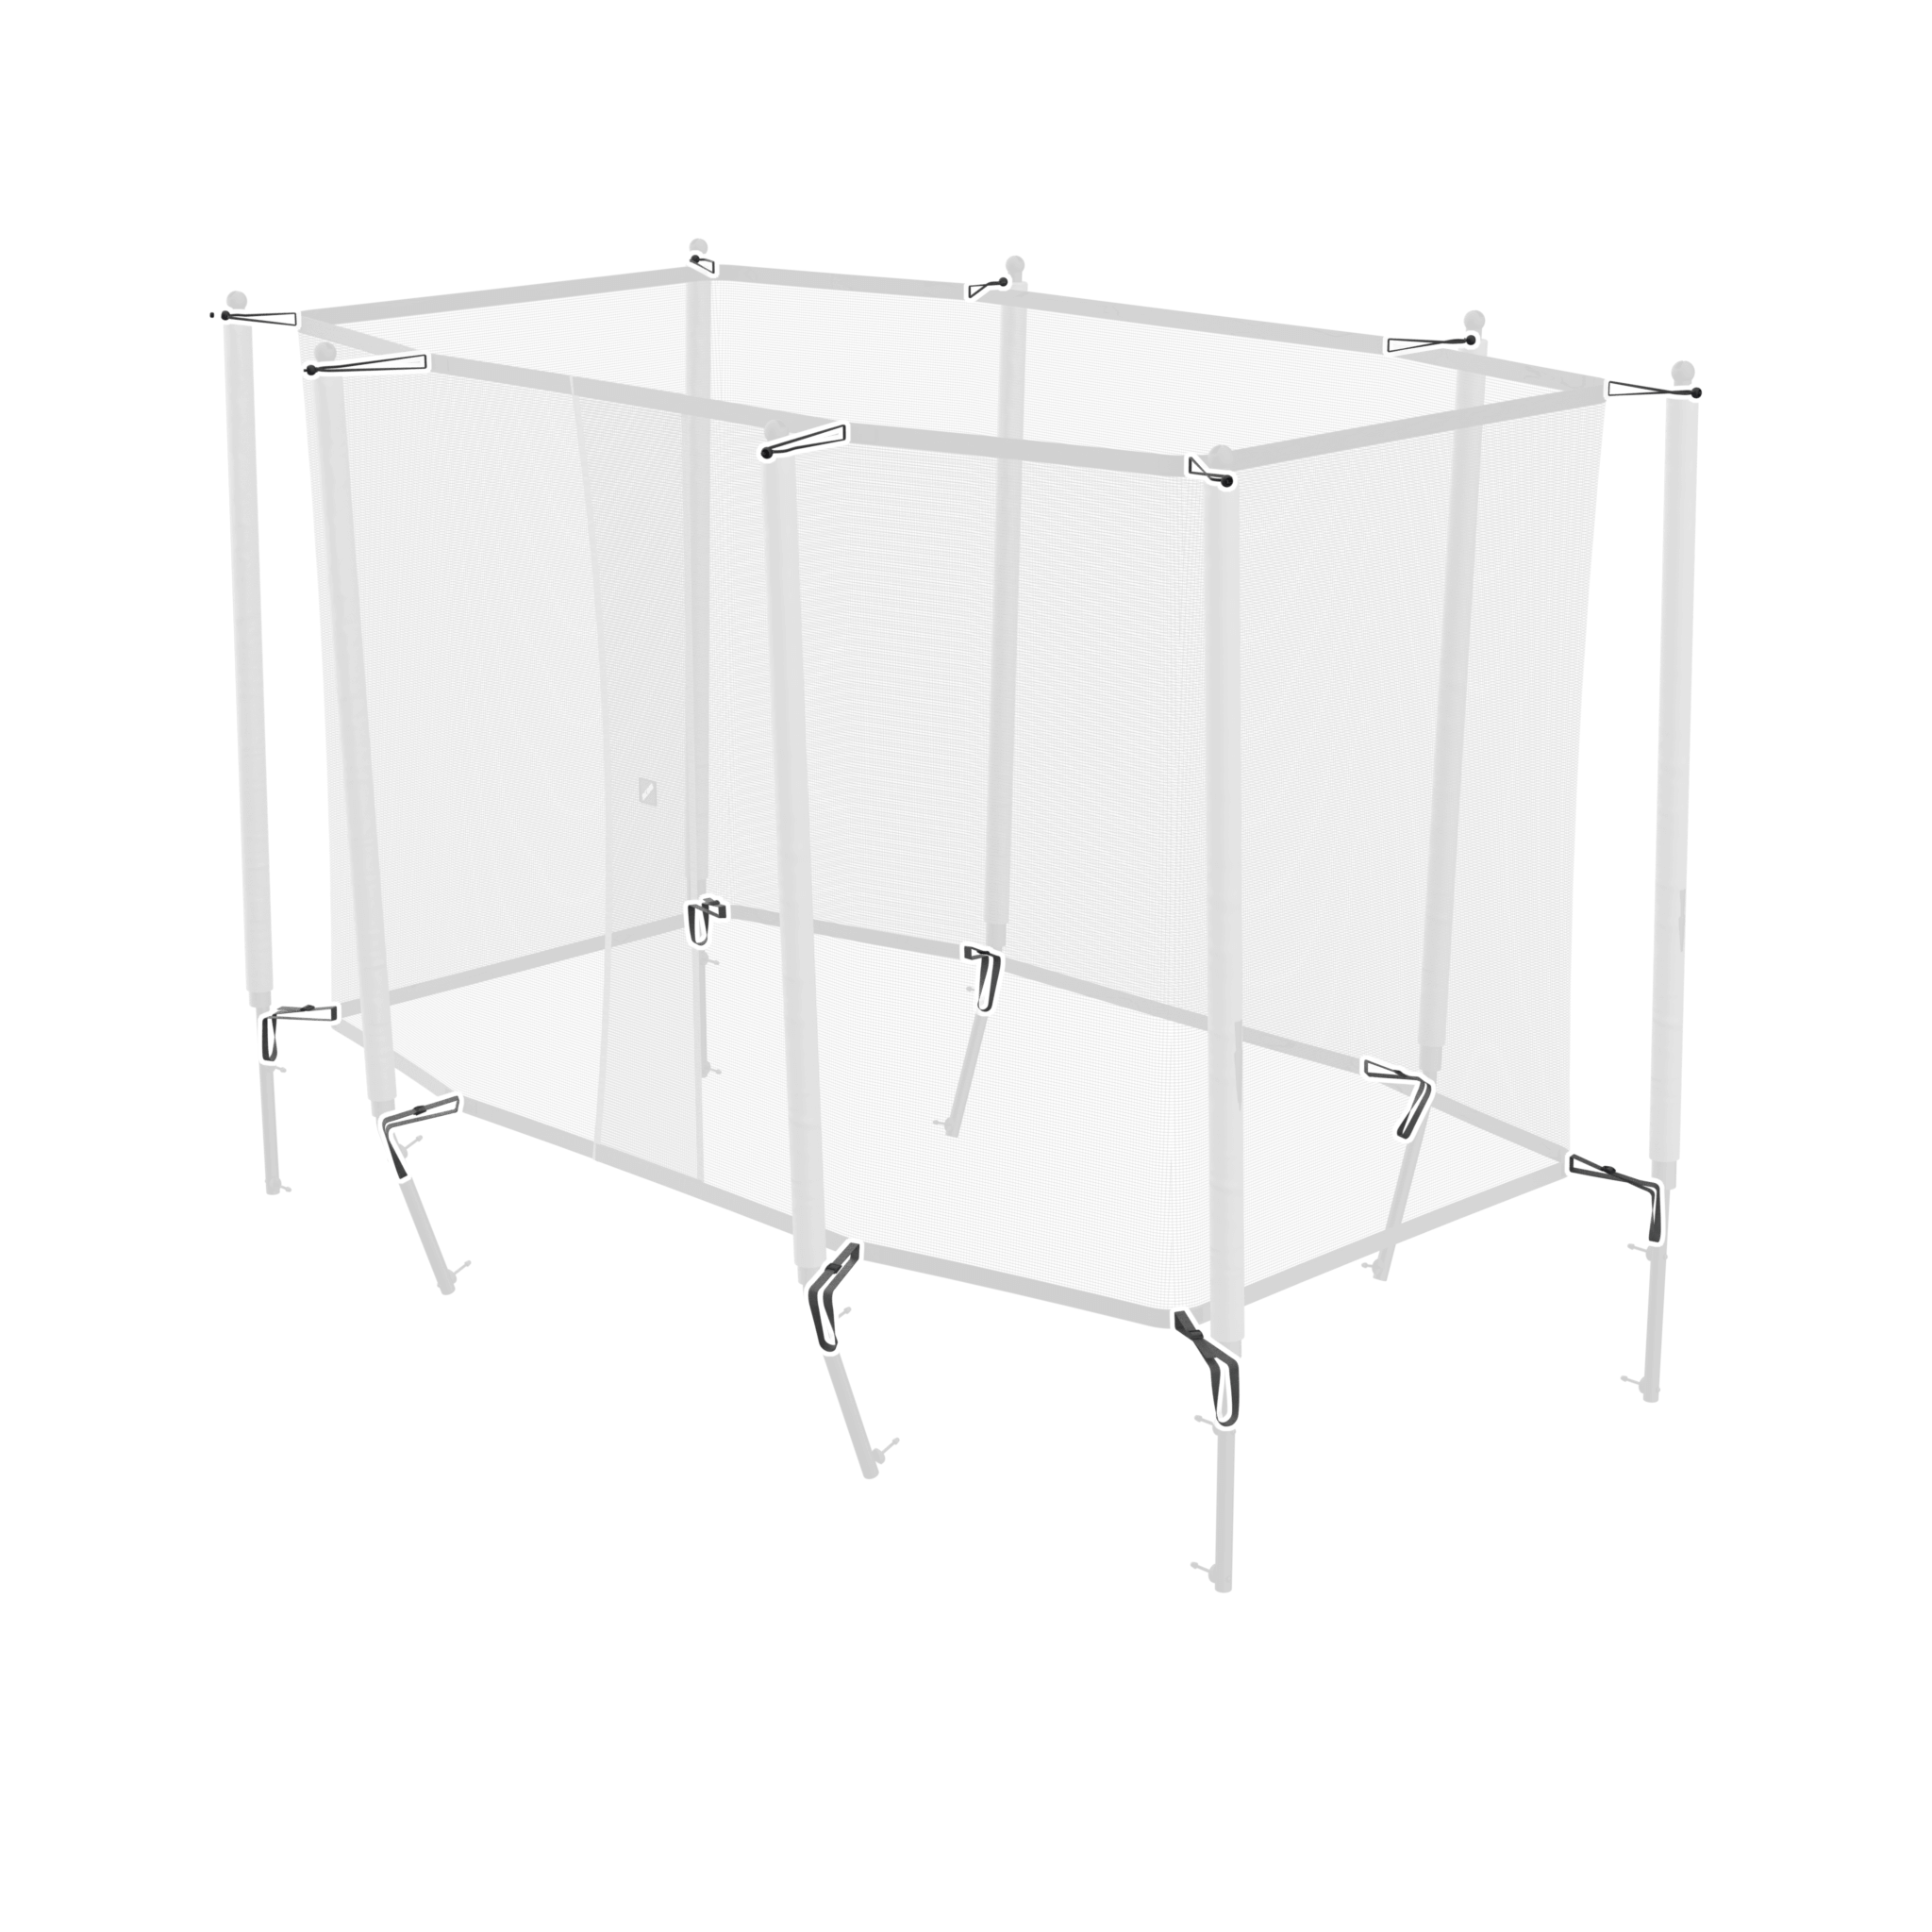 Bild som belyser nätfästningsremmen och bungee-satsen för ACON 13/16 HD-kapsling